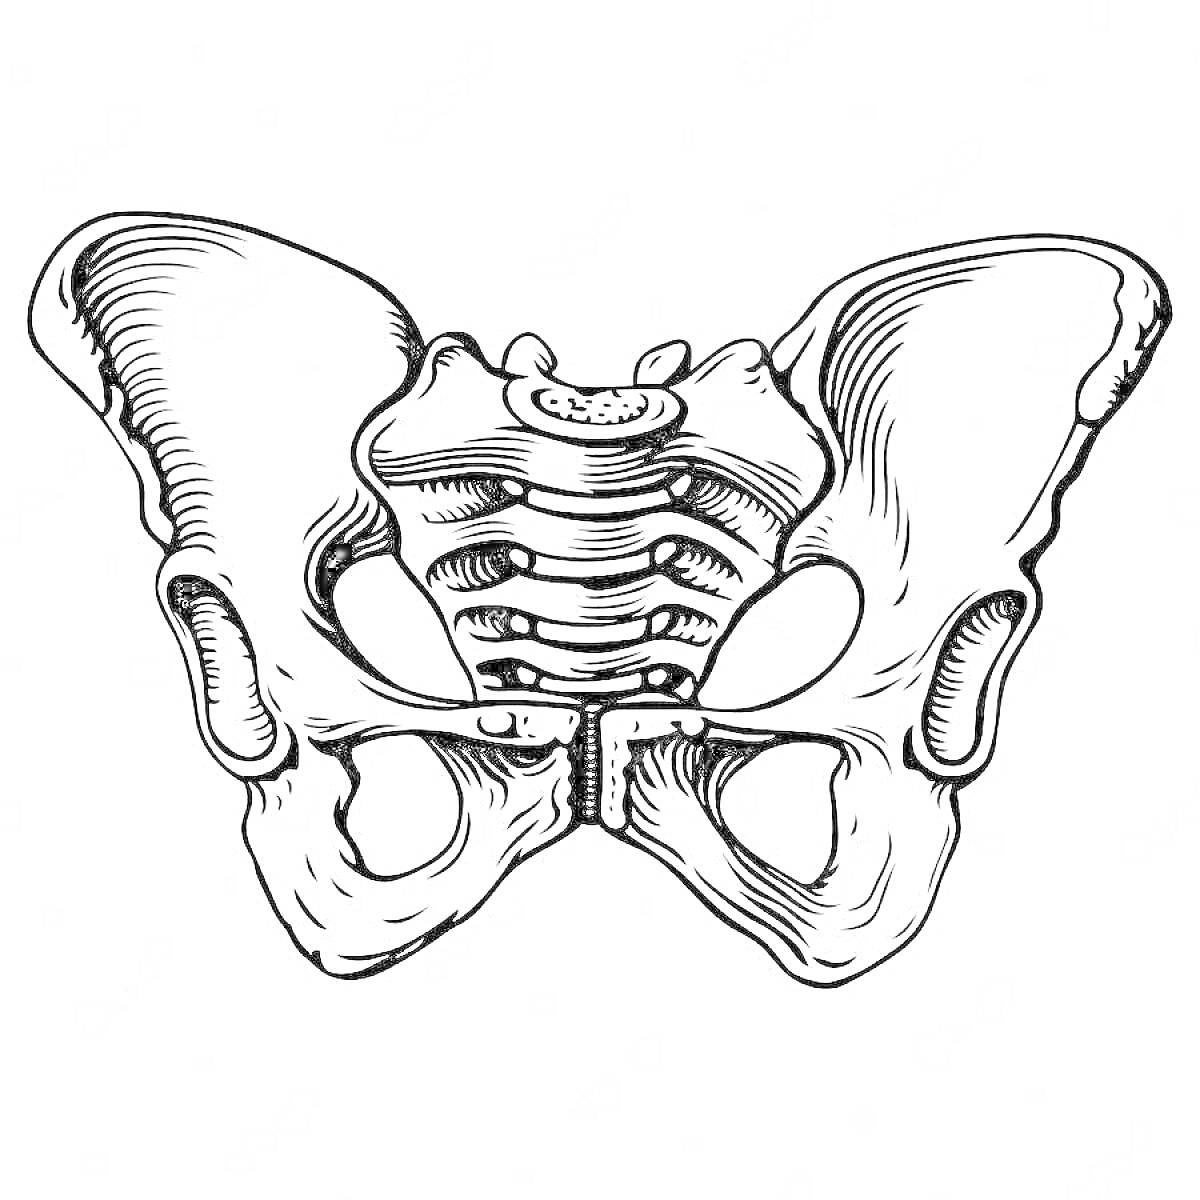 человеческий таз, крестец, подвздошная кость, седалищная кость, лобковая кость, крестцово-подвздошный сустав.